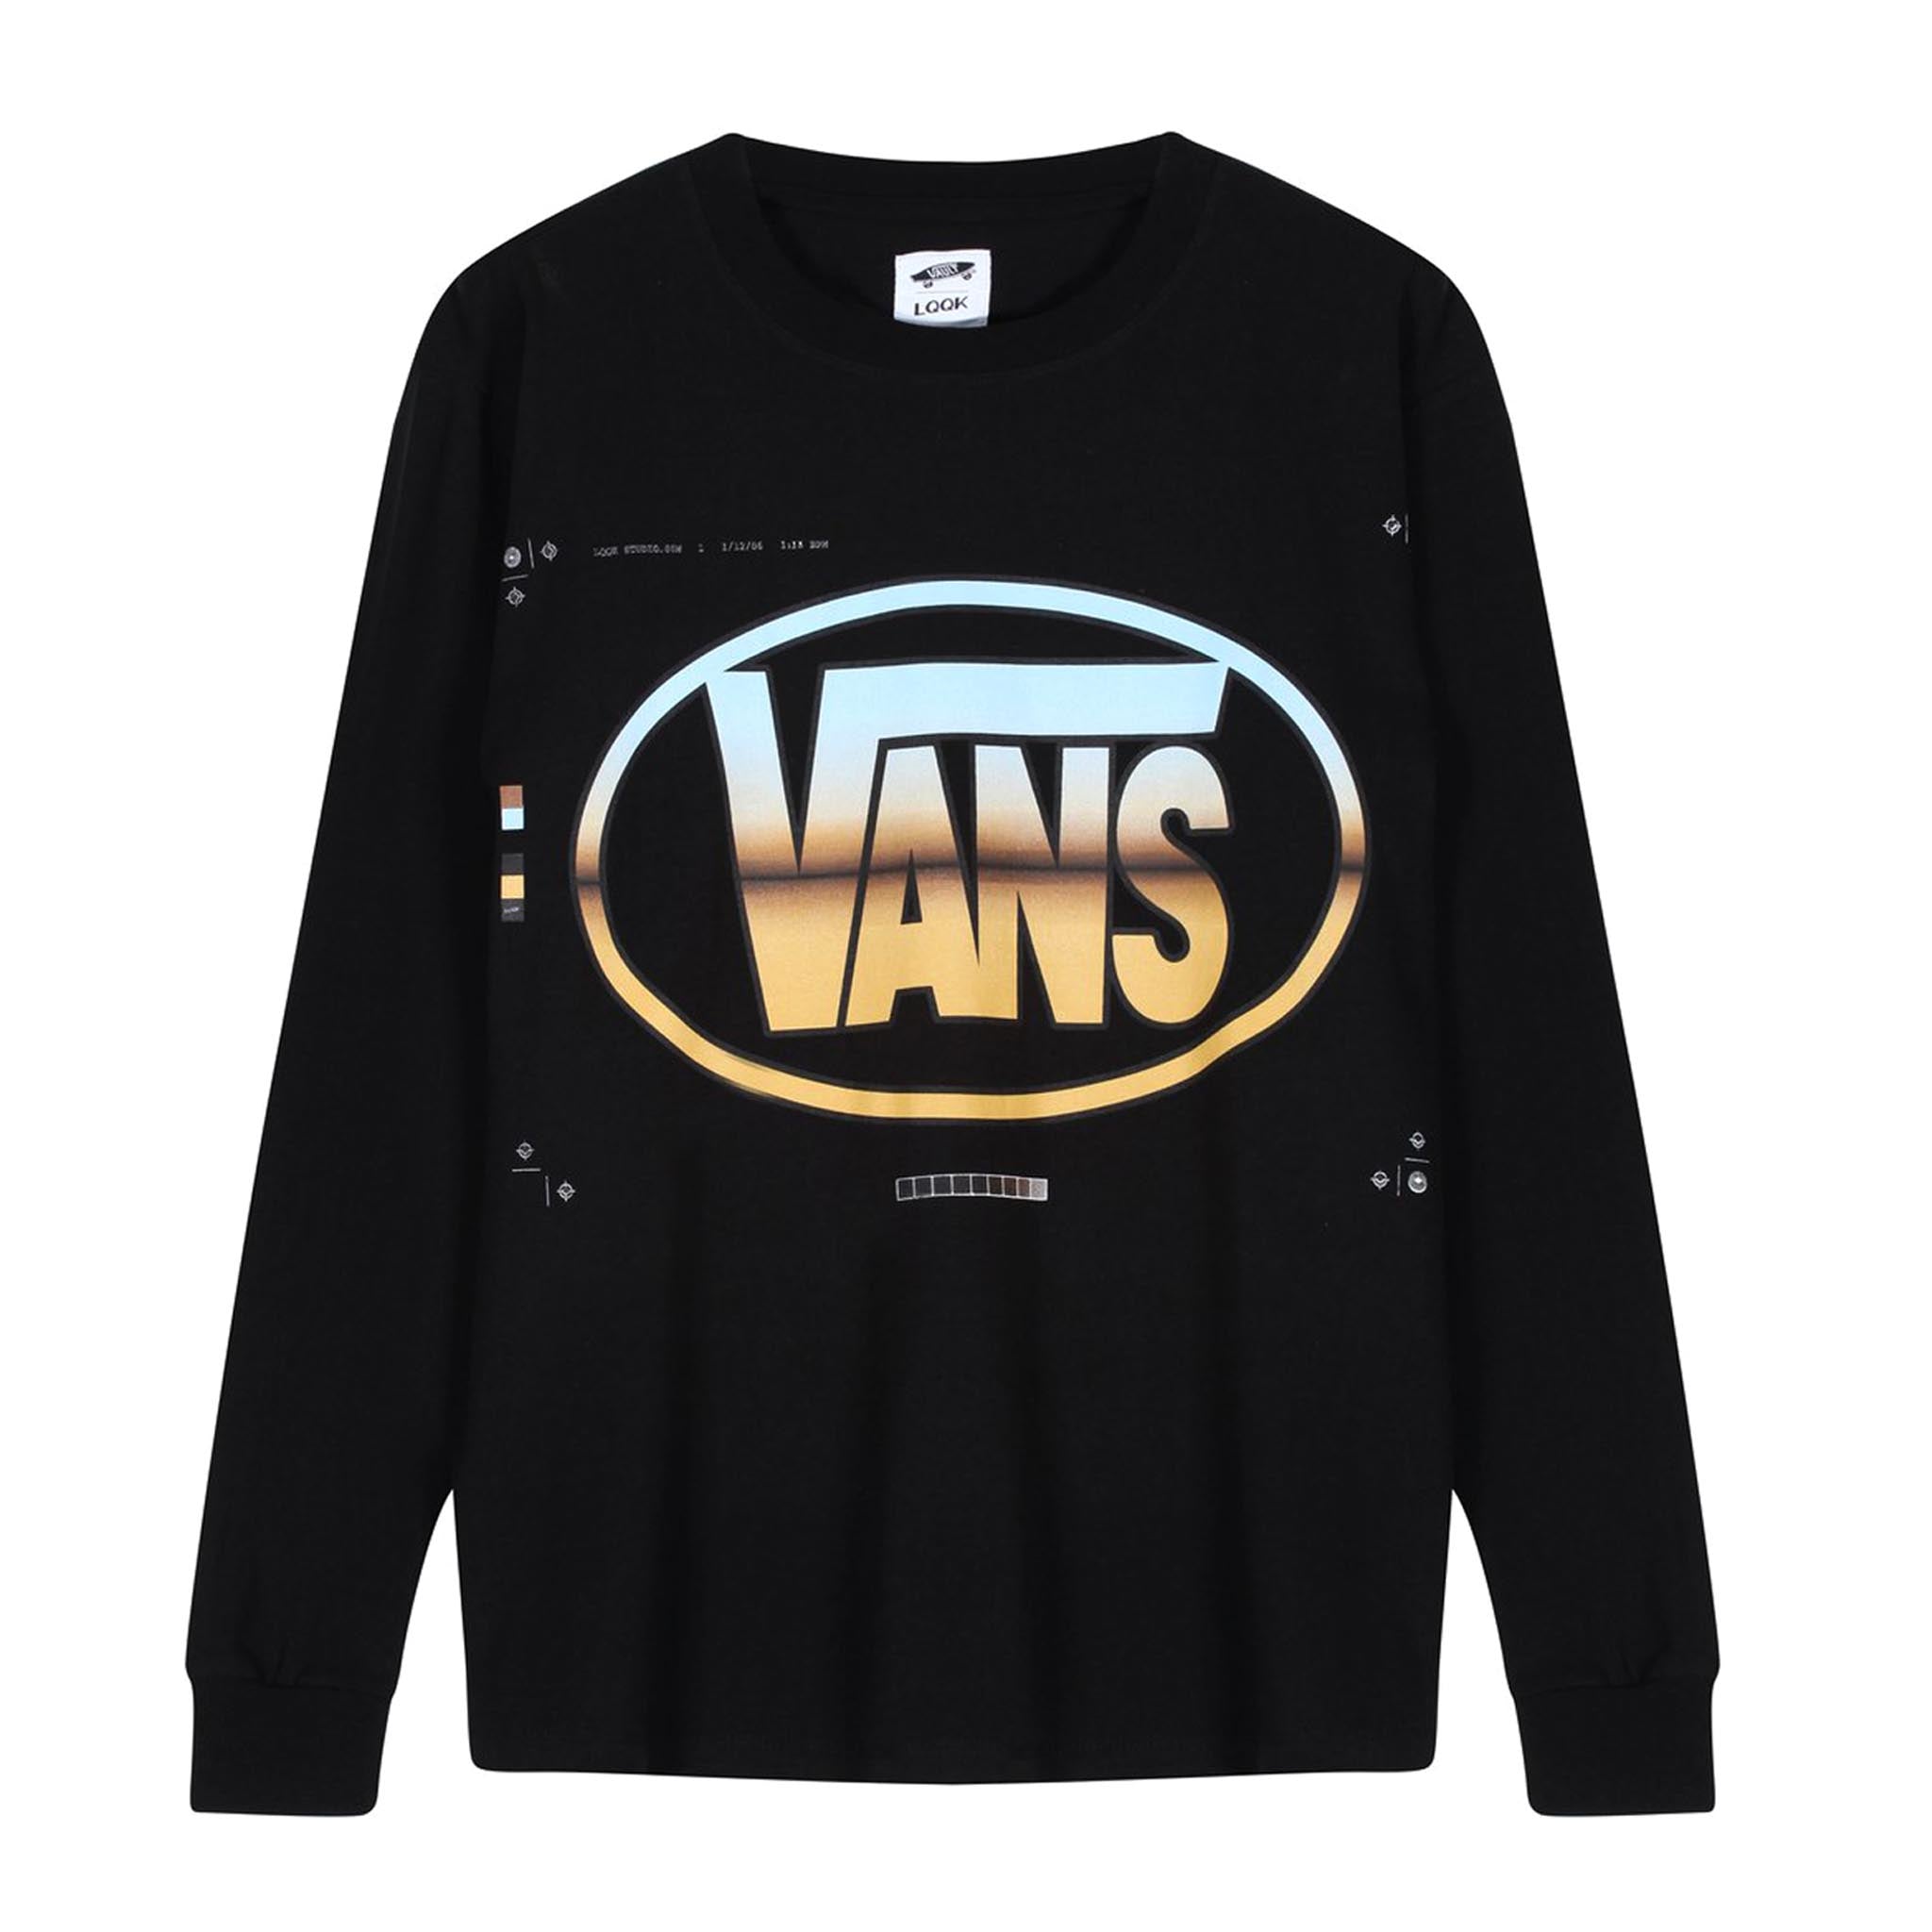 Vans Vault x LQQK Studio Long Sleeve Tee Black